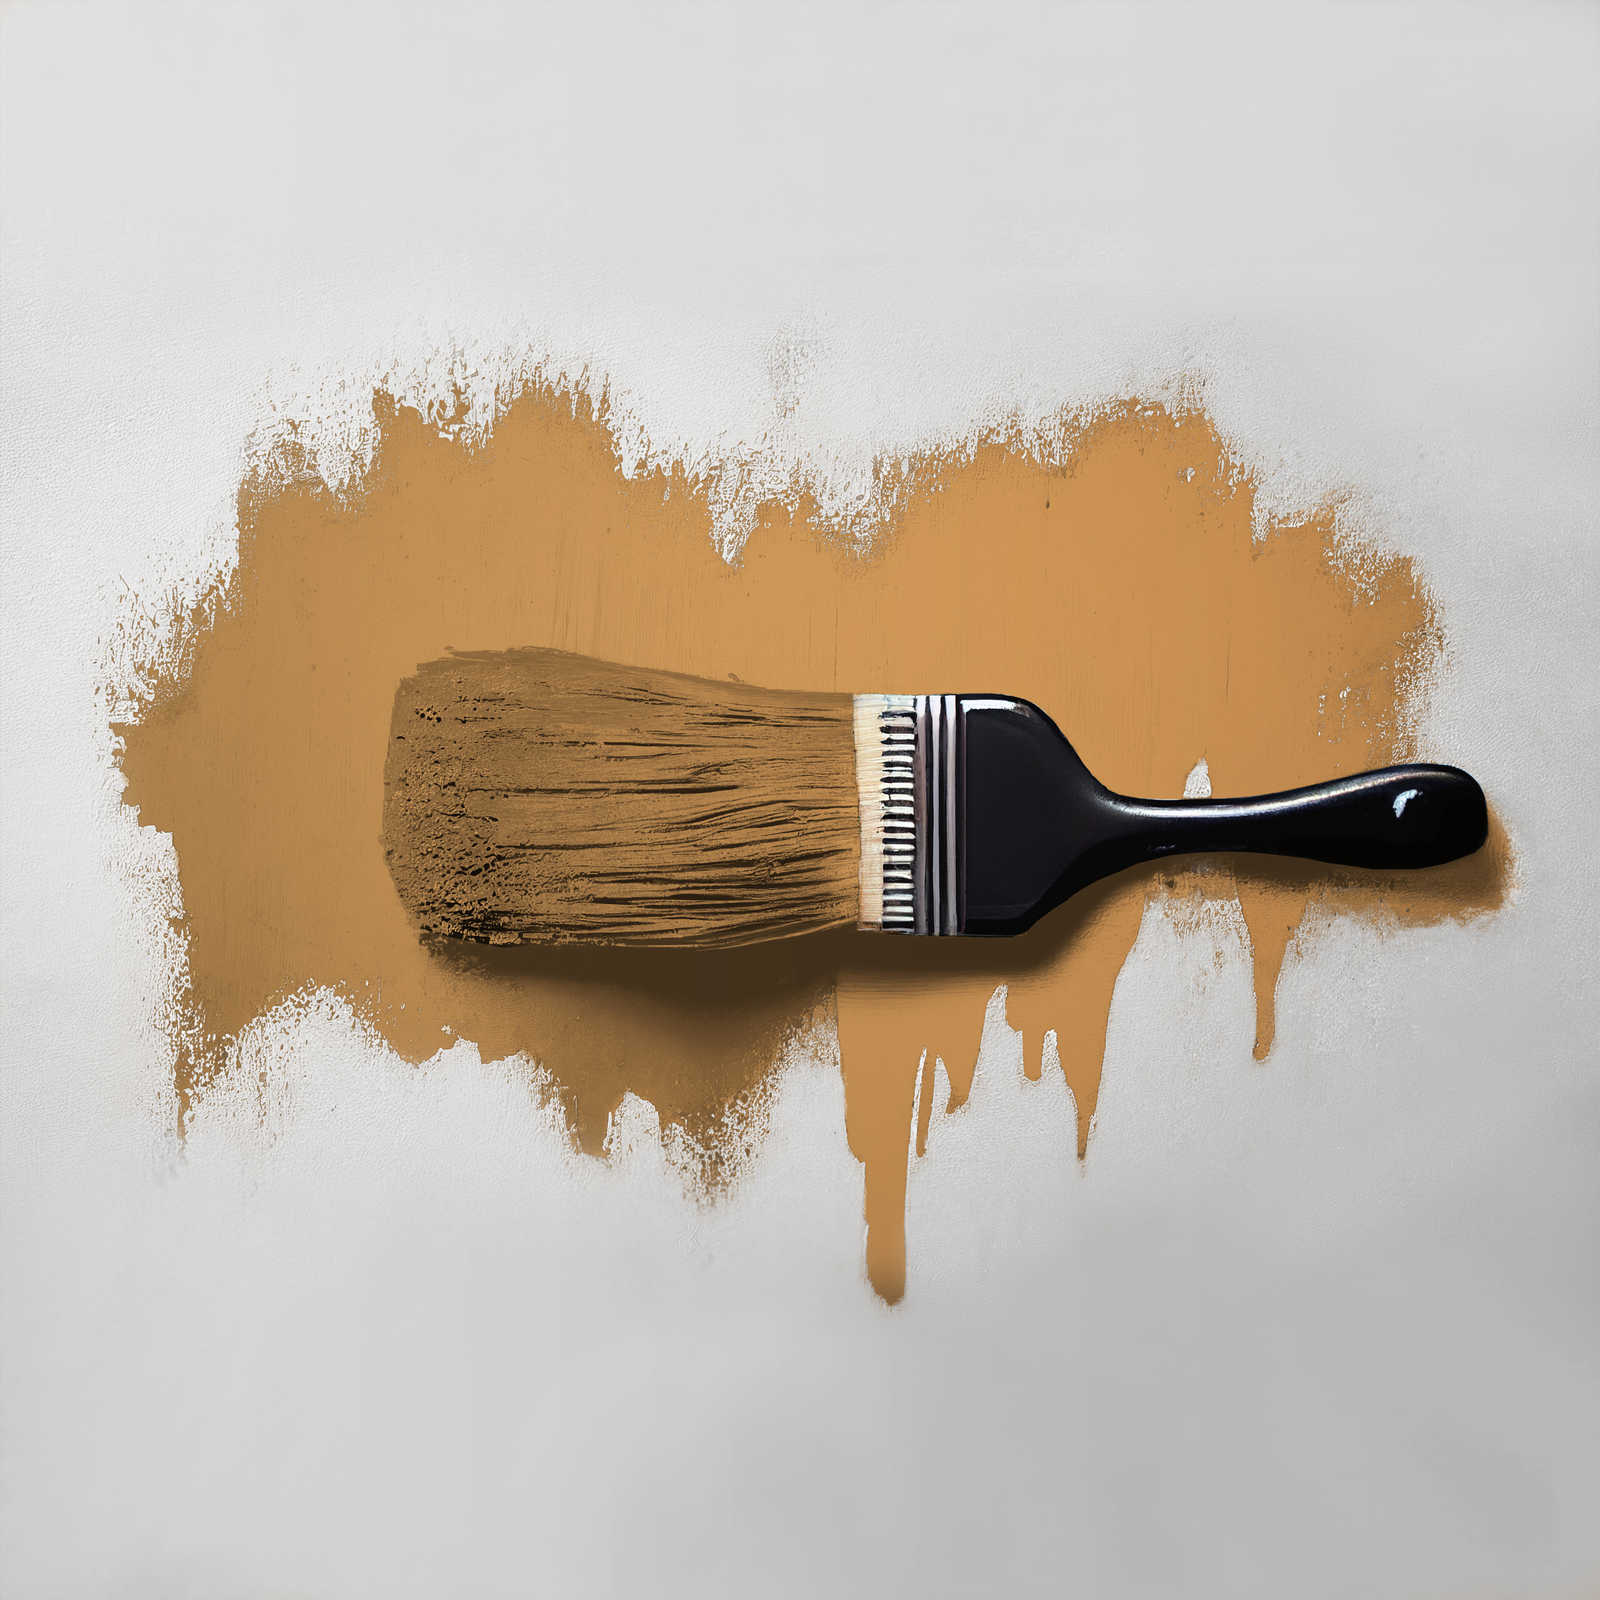             Pintura mural TCK5007 »Salted Caramel« en caramelo intenso – 5,0 litro
        